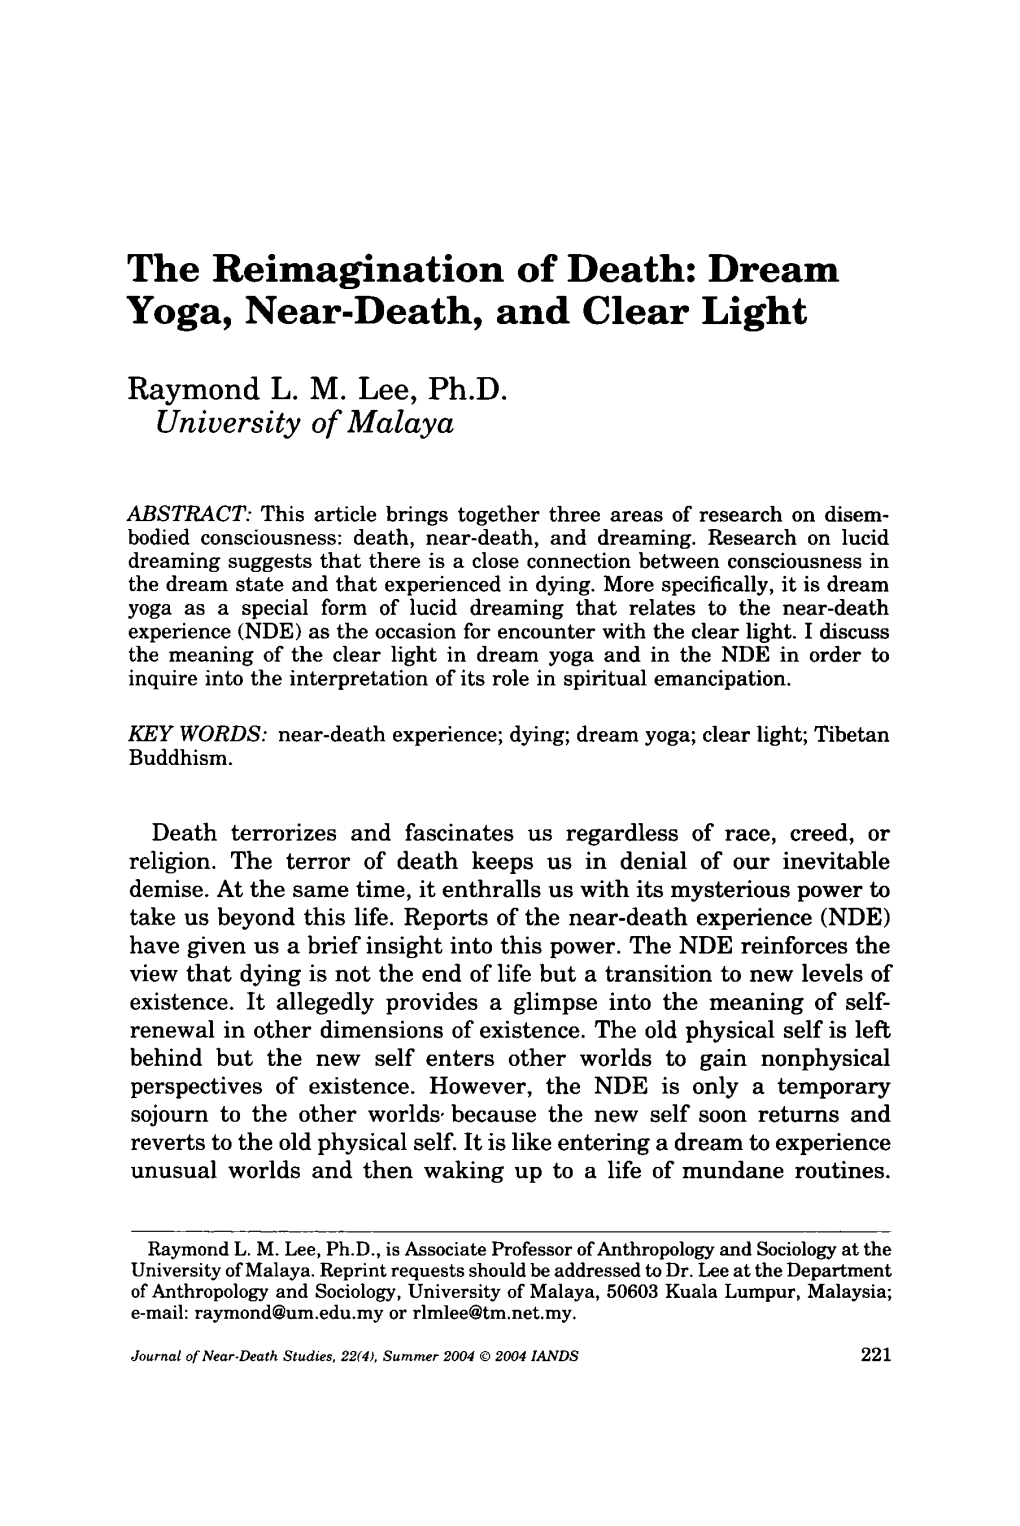 Dream Yoga, Near-Death, and Clear Light